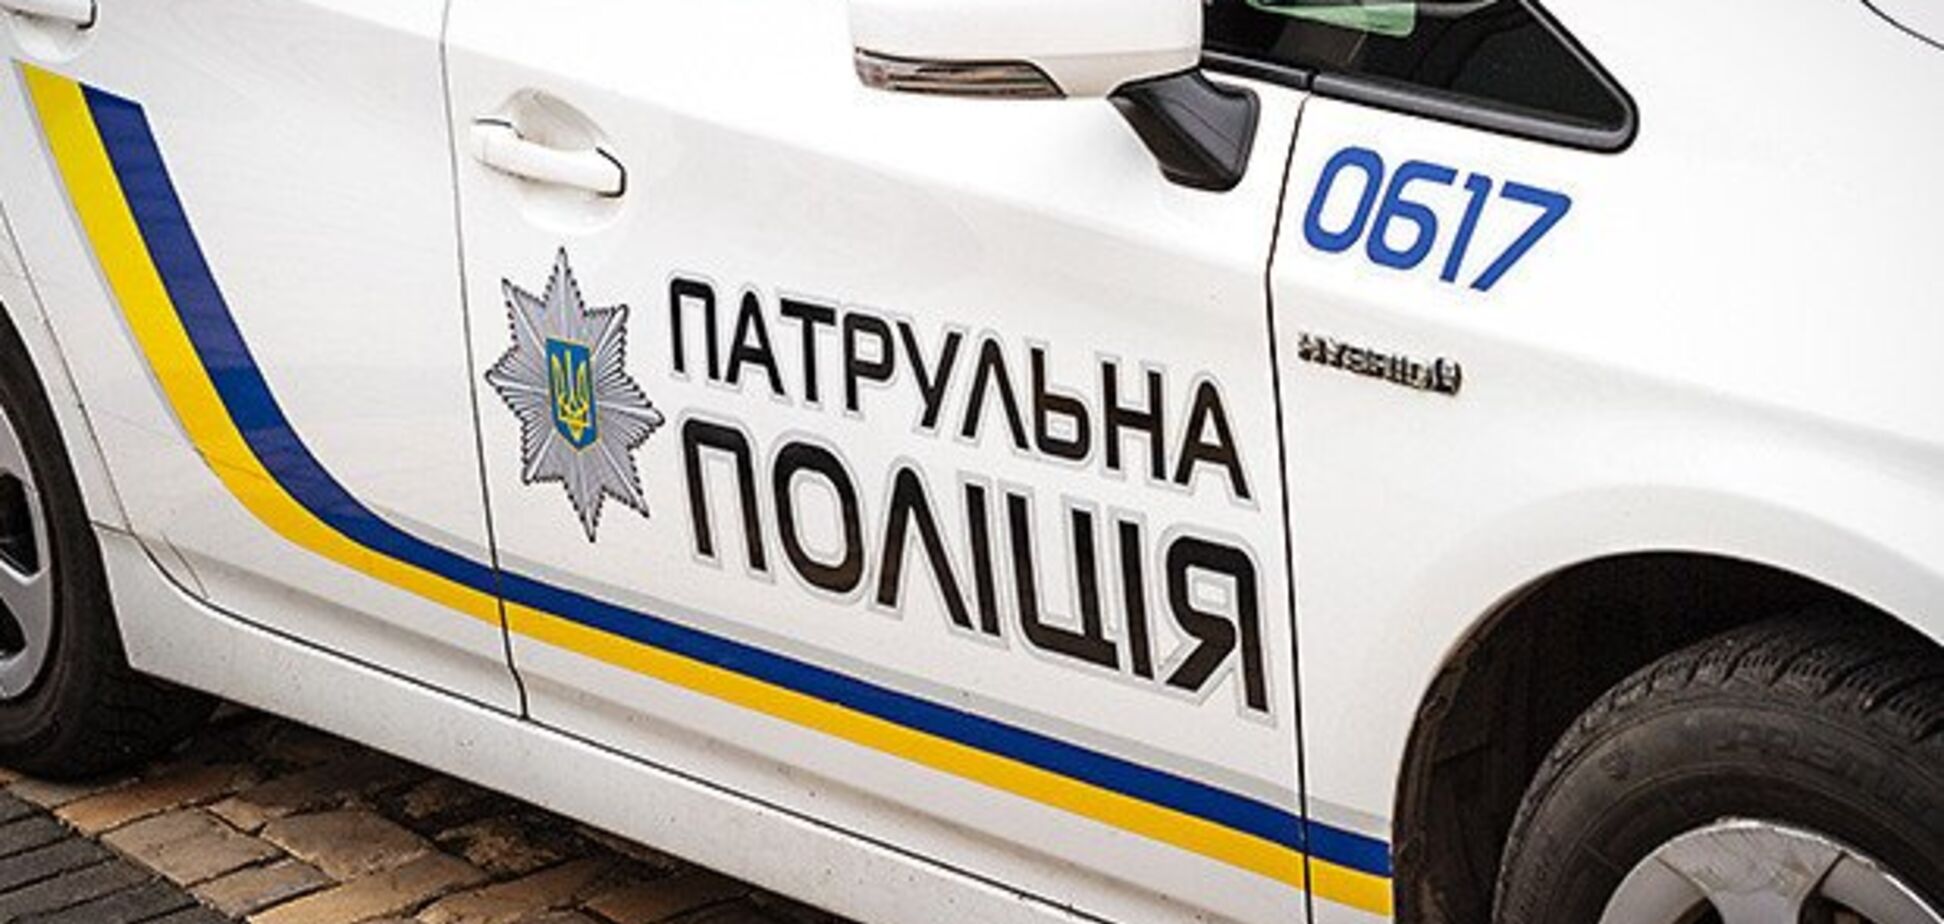 Штрафы не страшны: юрист дал украинским водителям полезный совет